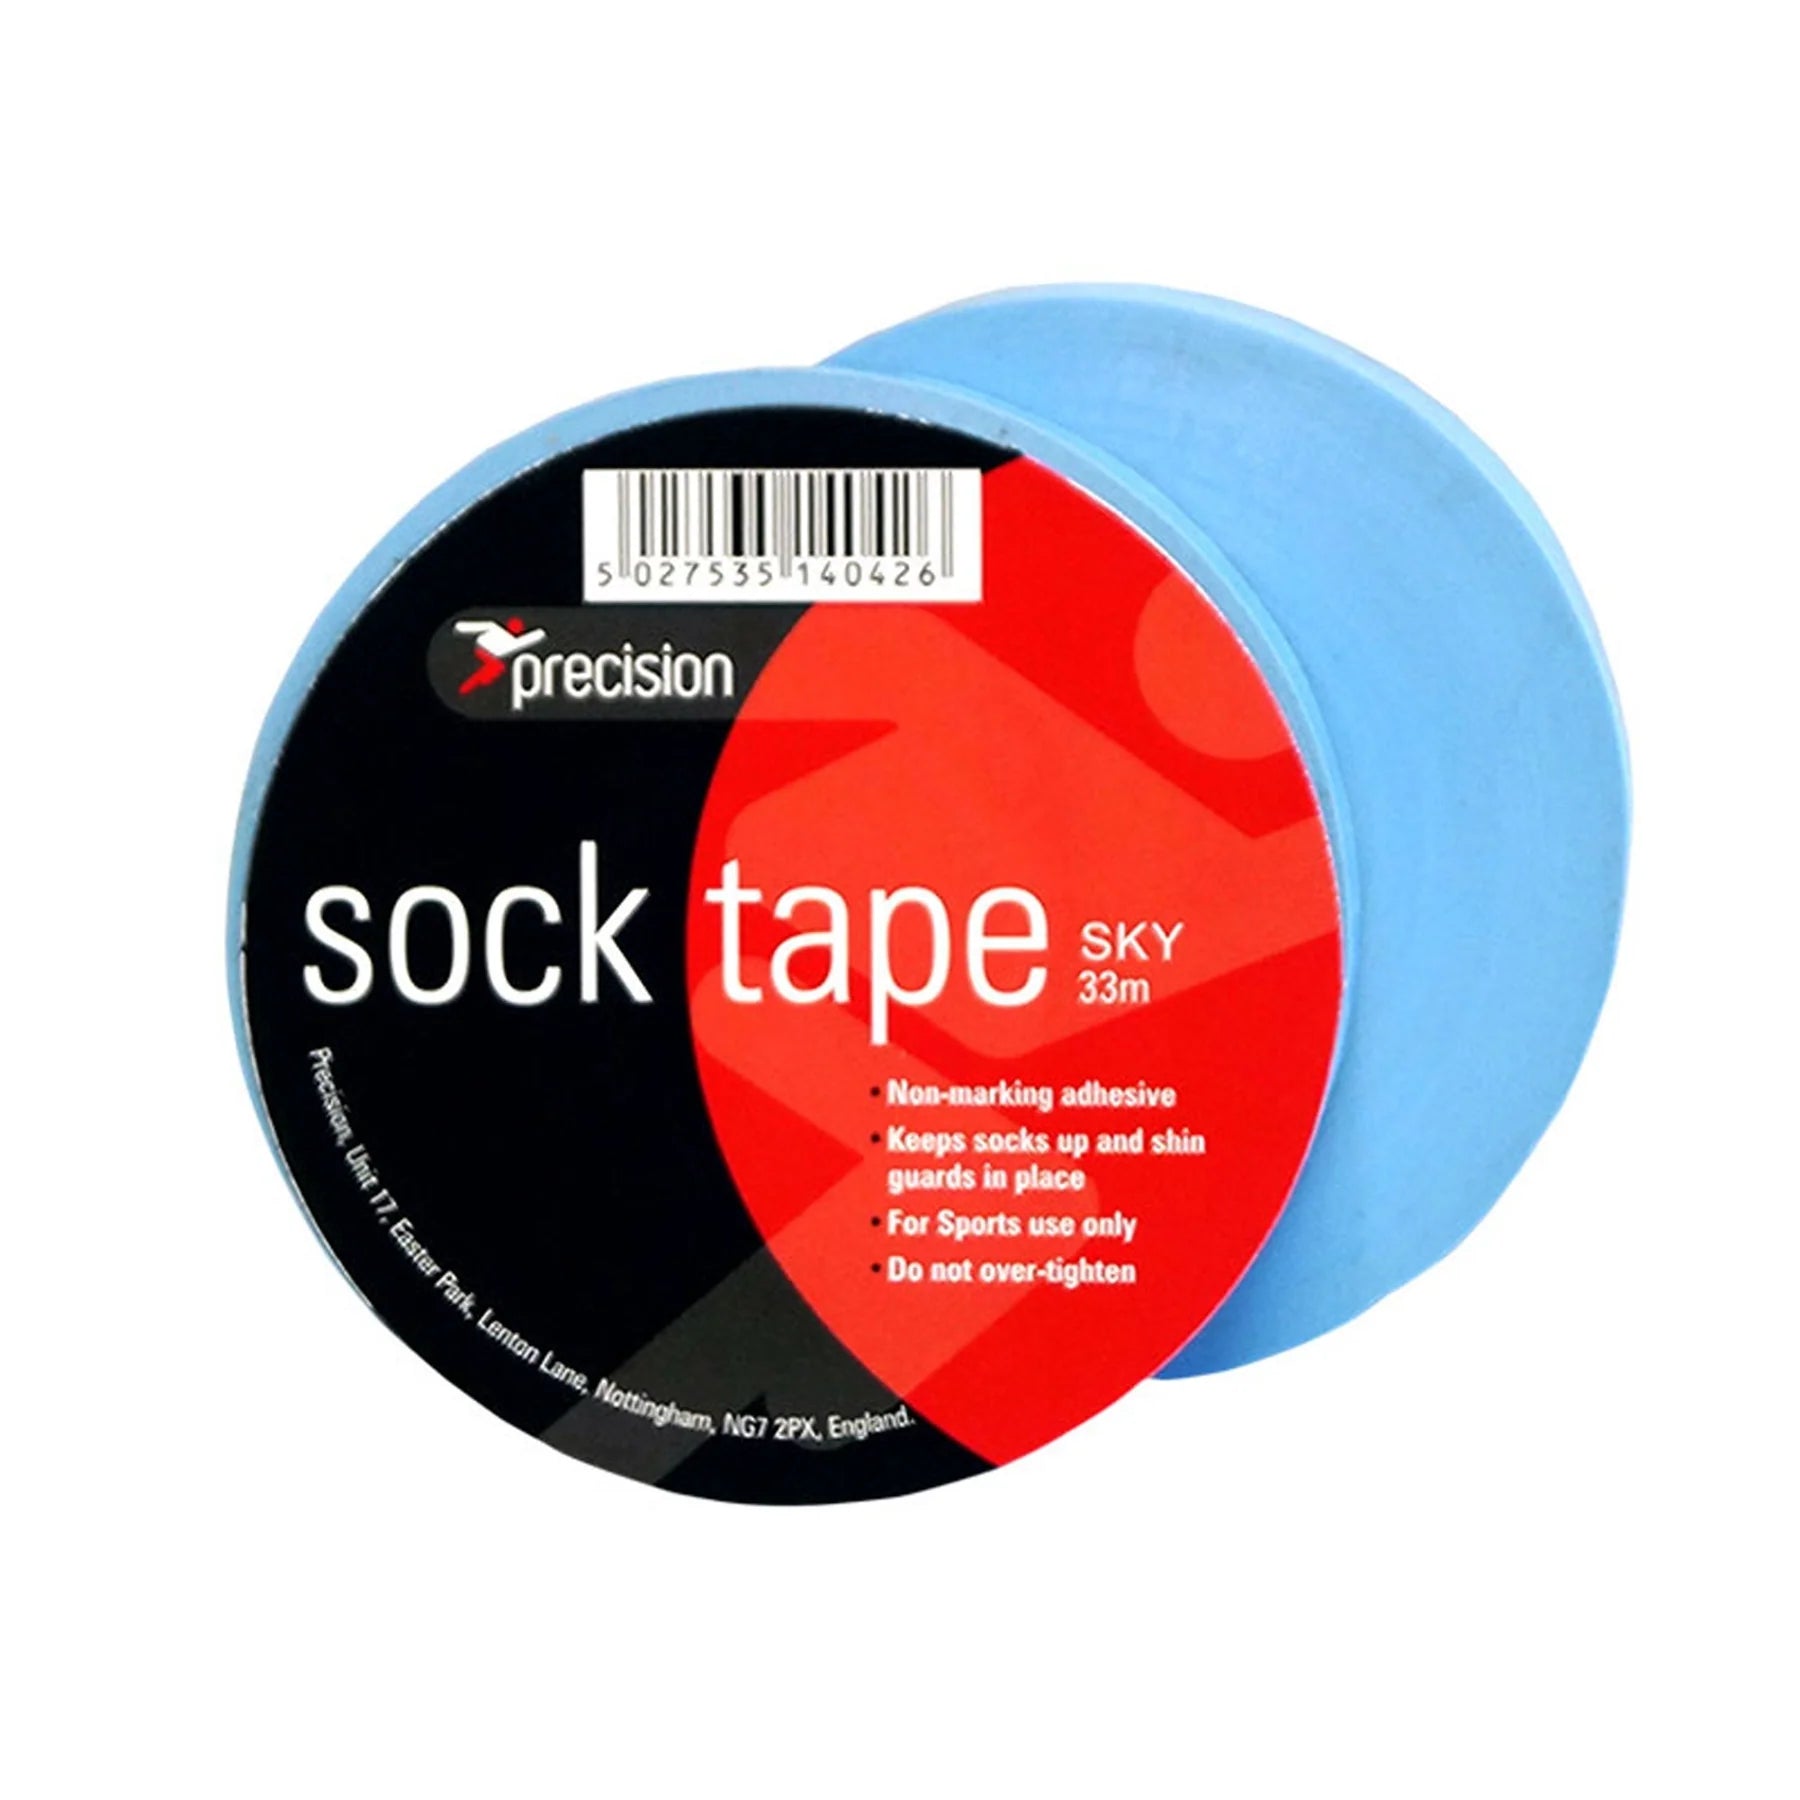 Precision Sock Tape (Sky)